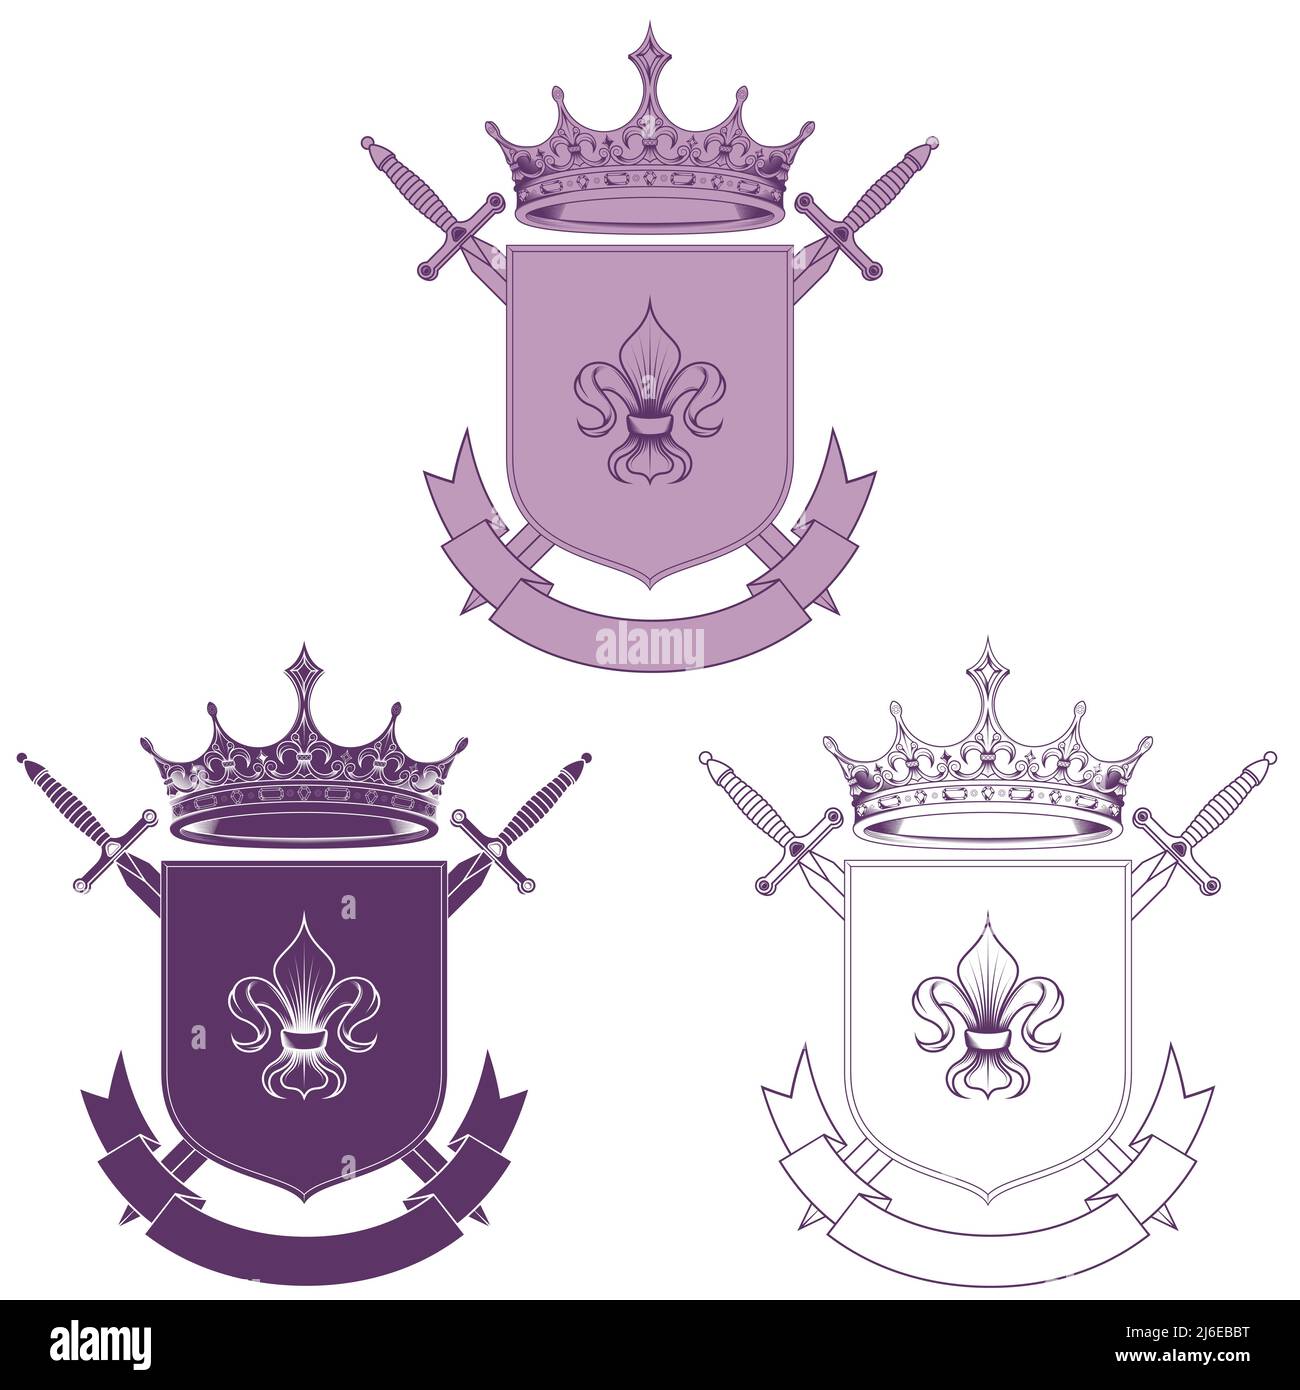 Mittelalter Wappenschild Vektor-Design, Wappen mit Fleur de Lis Wappenzeichen, mit Kronen und Schwertern Stock Vektor